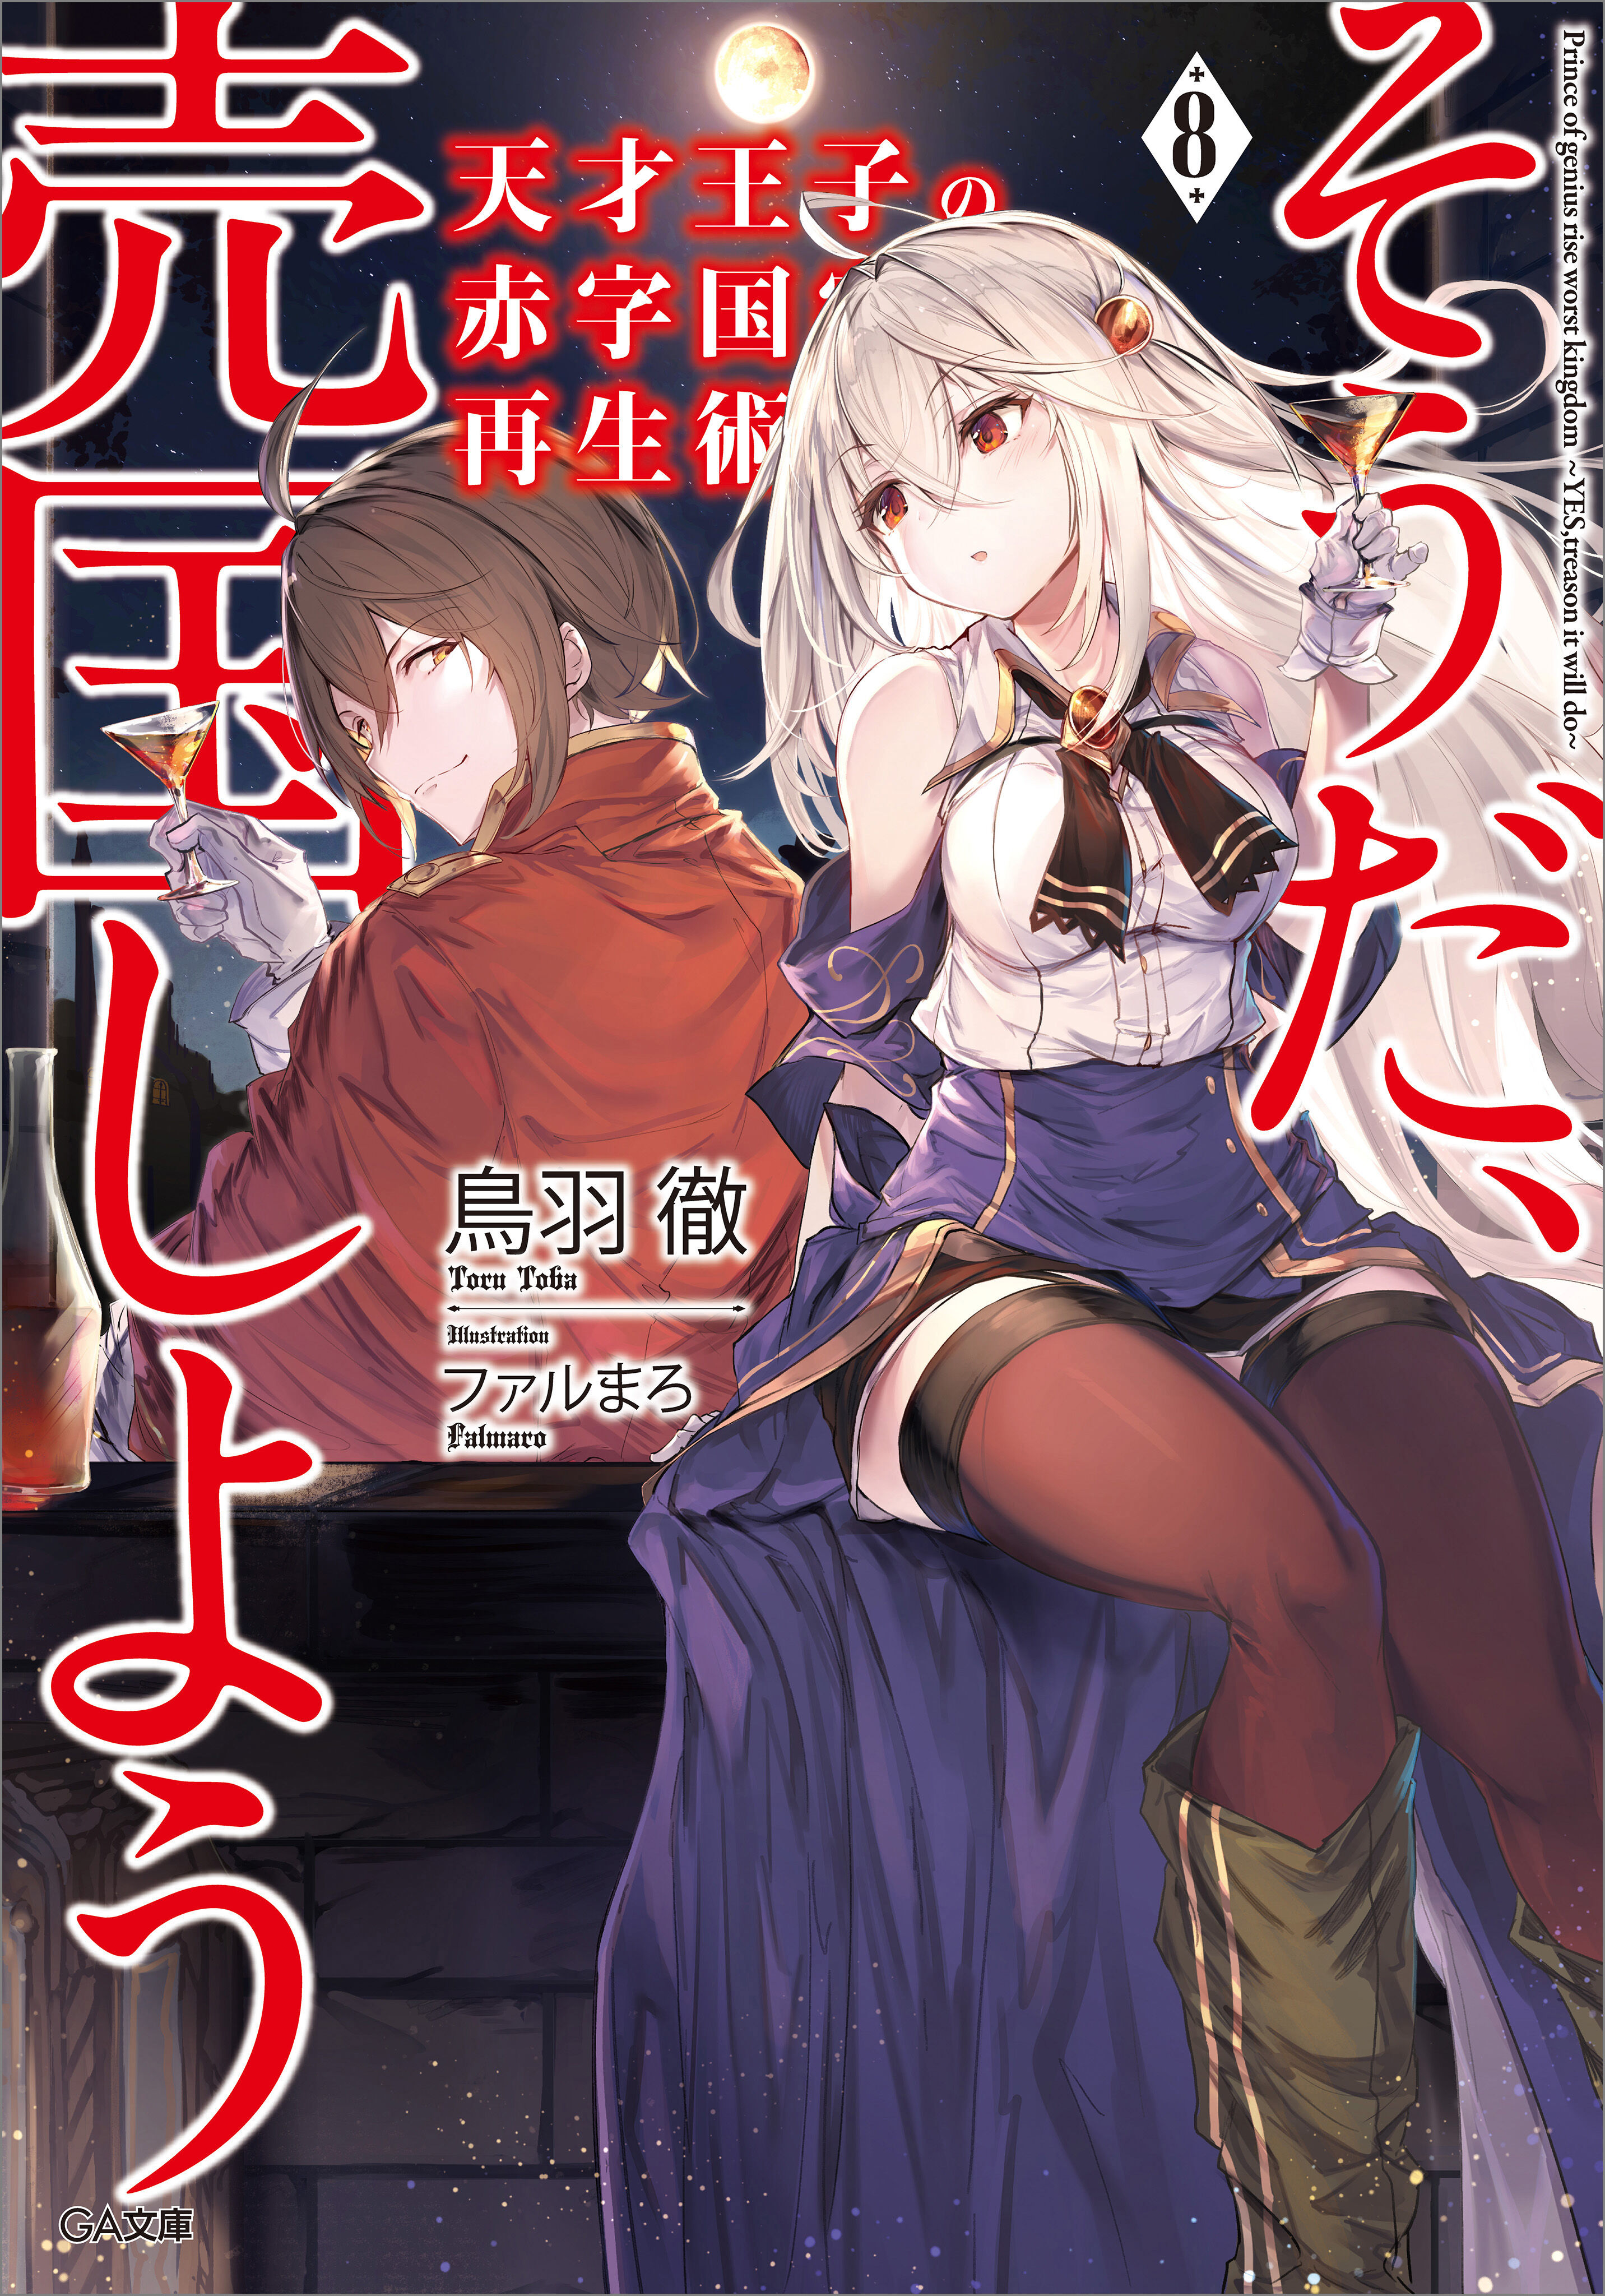 Light Novel Volume 10, Tensai Ouji no Akaji Wiki